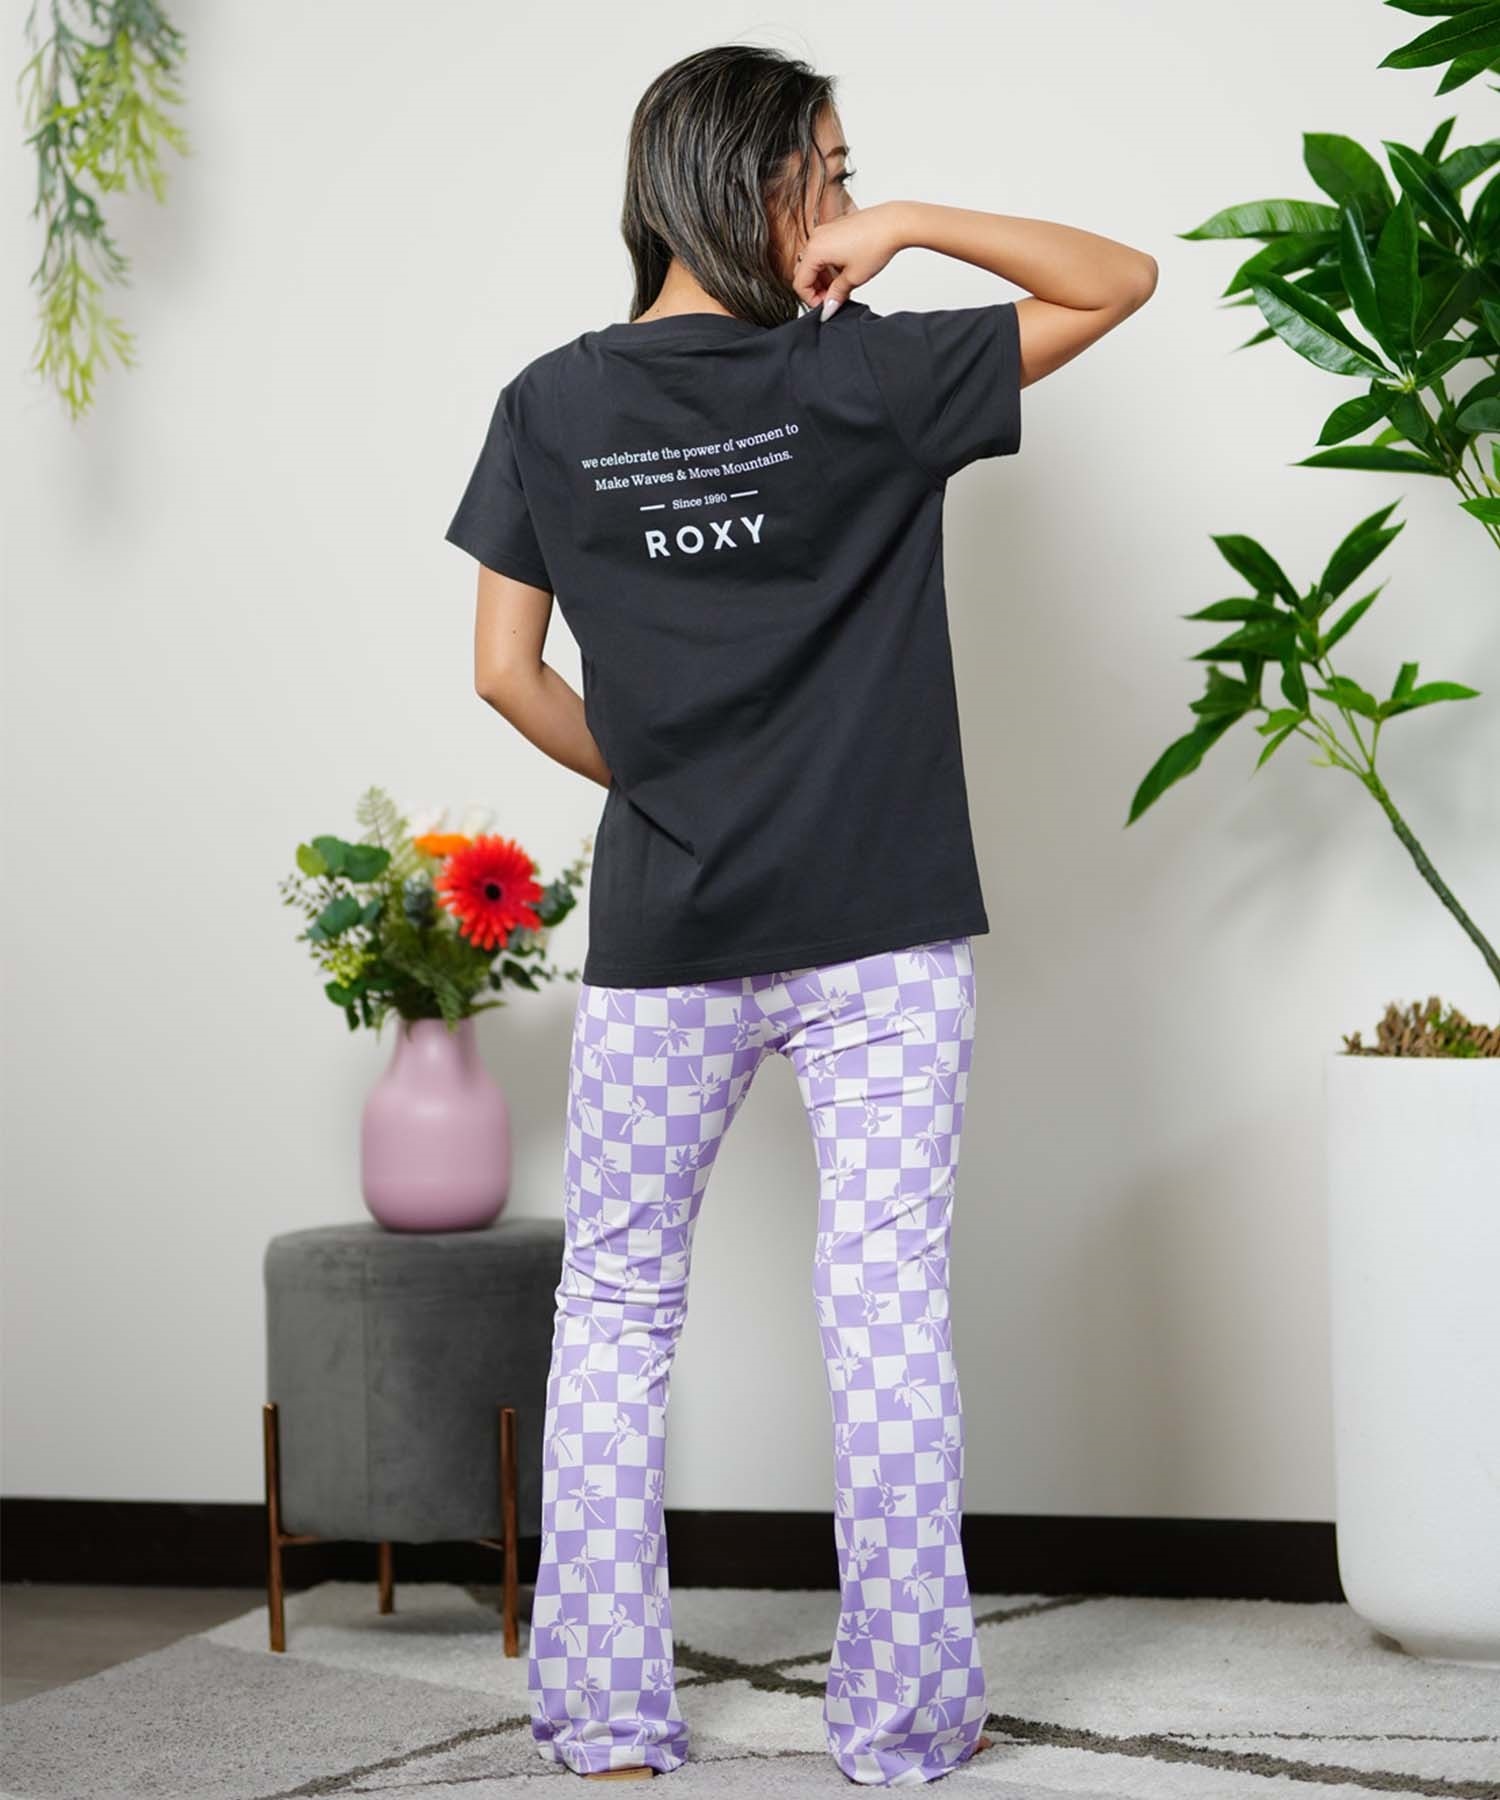 【クーポン対象】ROXY ロキシー POWER OF WOMEN Tシャツ パワーオブウーマン レディース バックプリント RST241081(OWT-M)